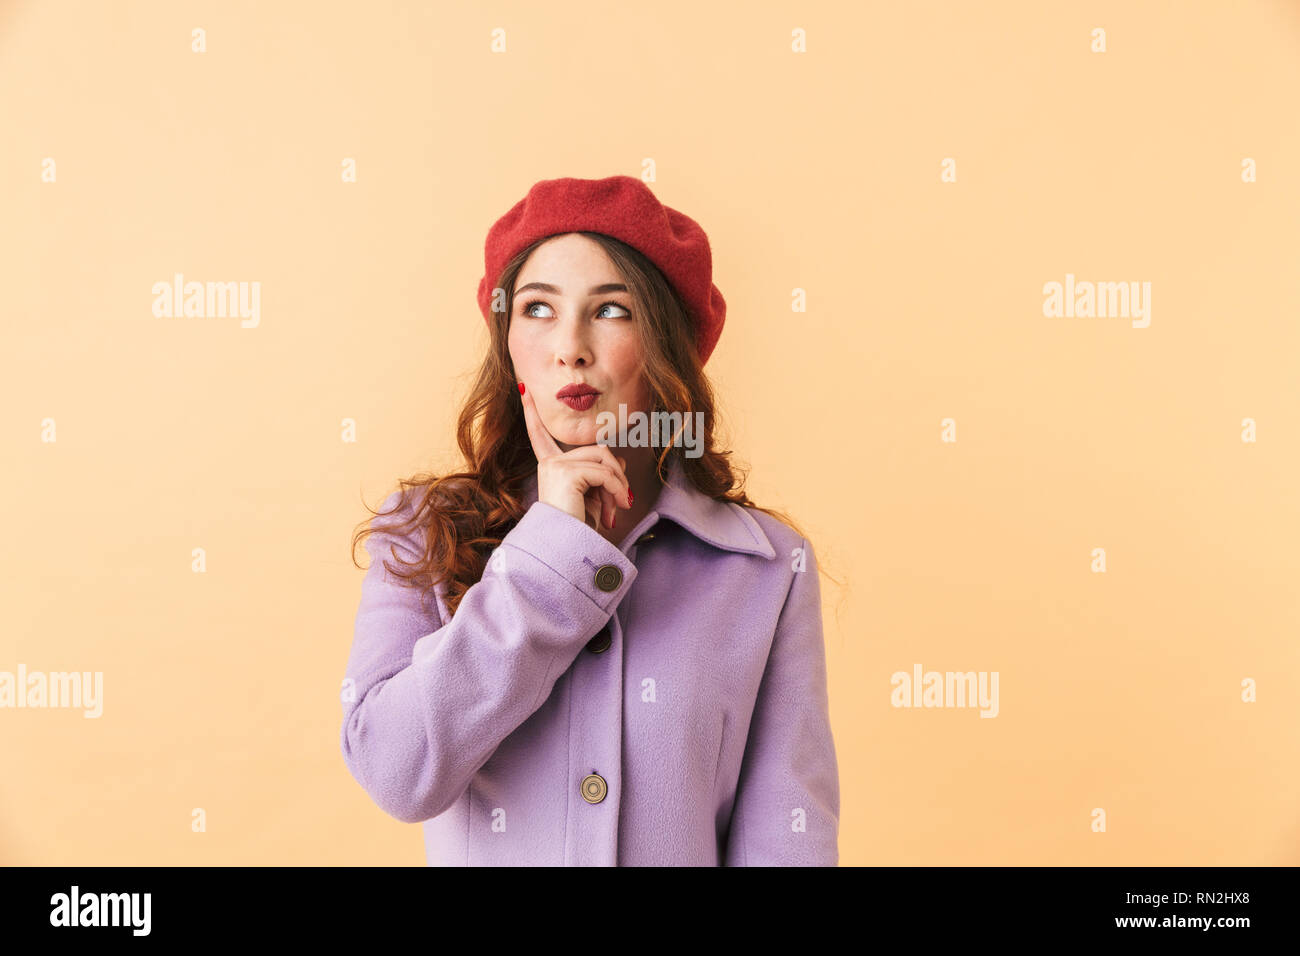 Portrait de fille brune 20s en manteau et hat smiling while isolés sur fond beige Banque D'Images